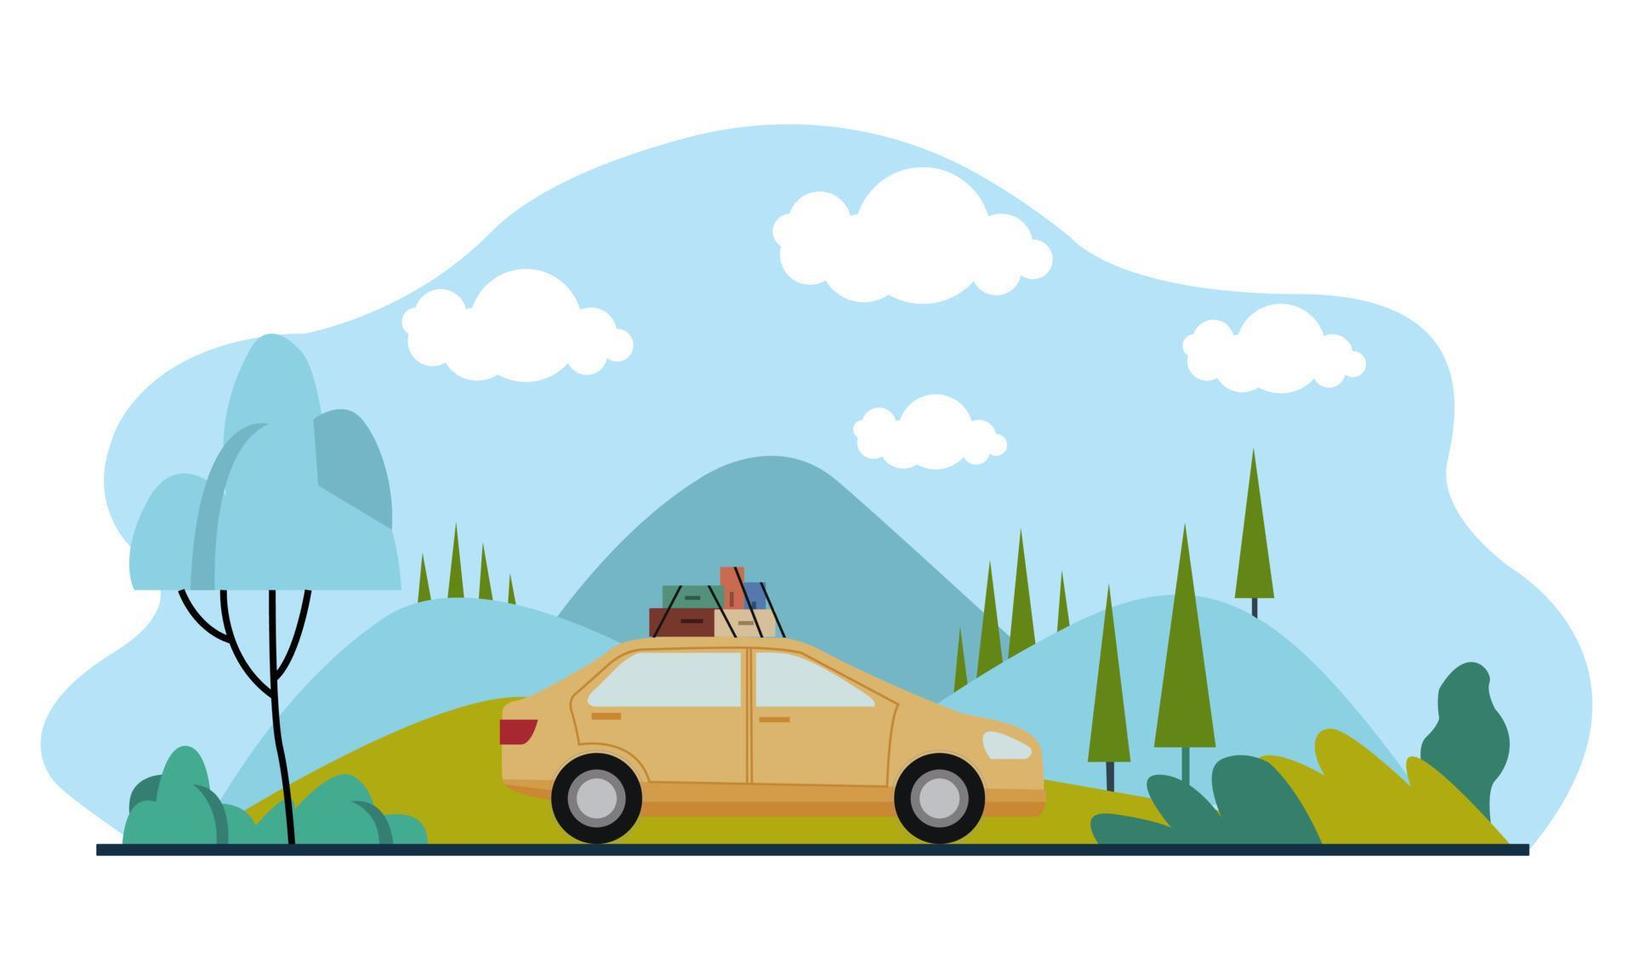 viaje familiar en coche en el fondo de un hermoso paisaje montañoso. ilustración vectorial de un diseño plano vector